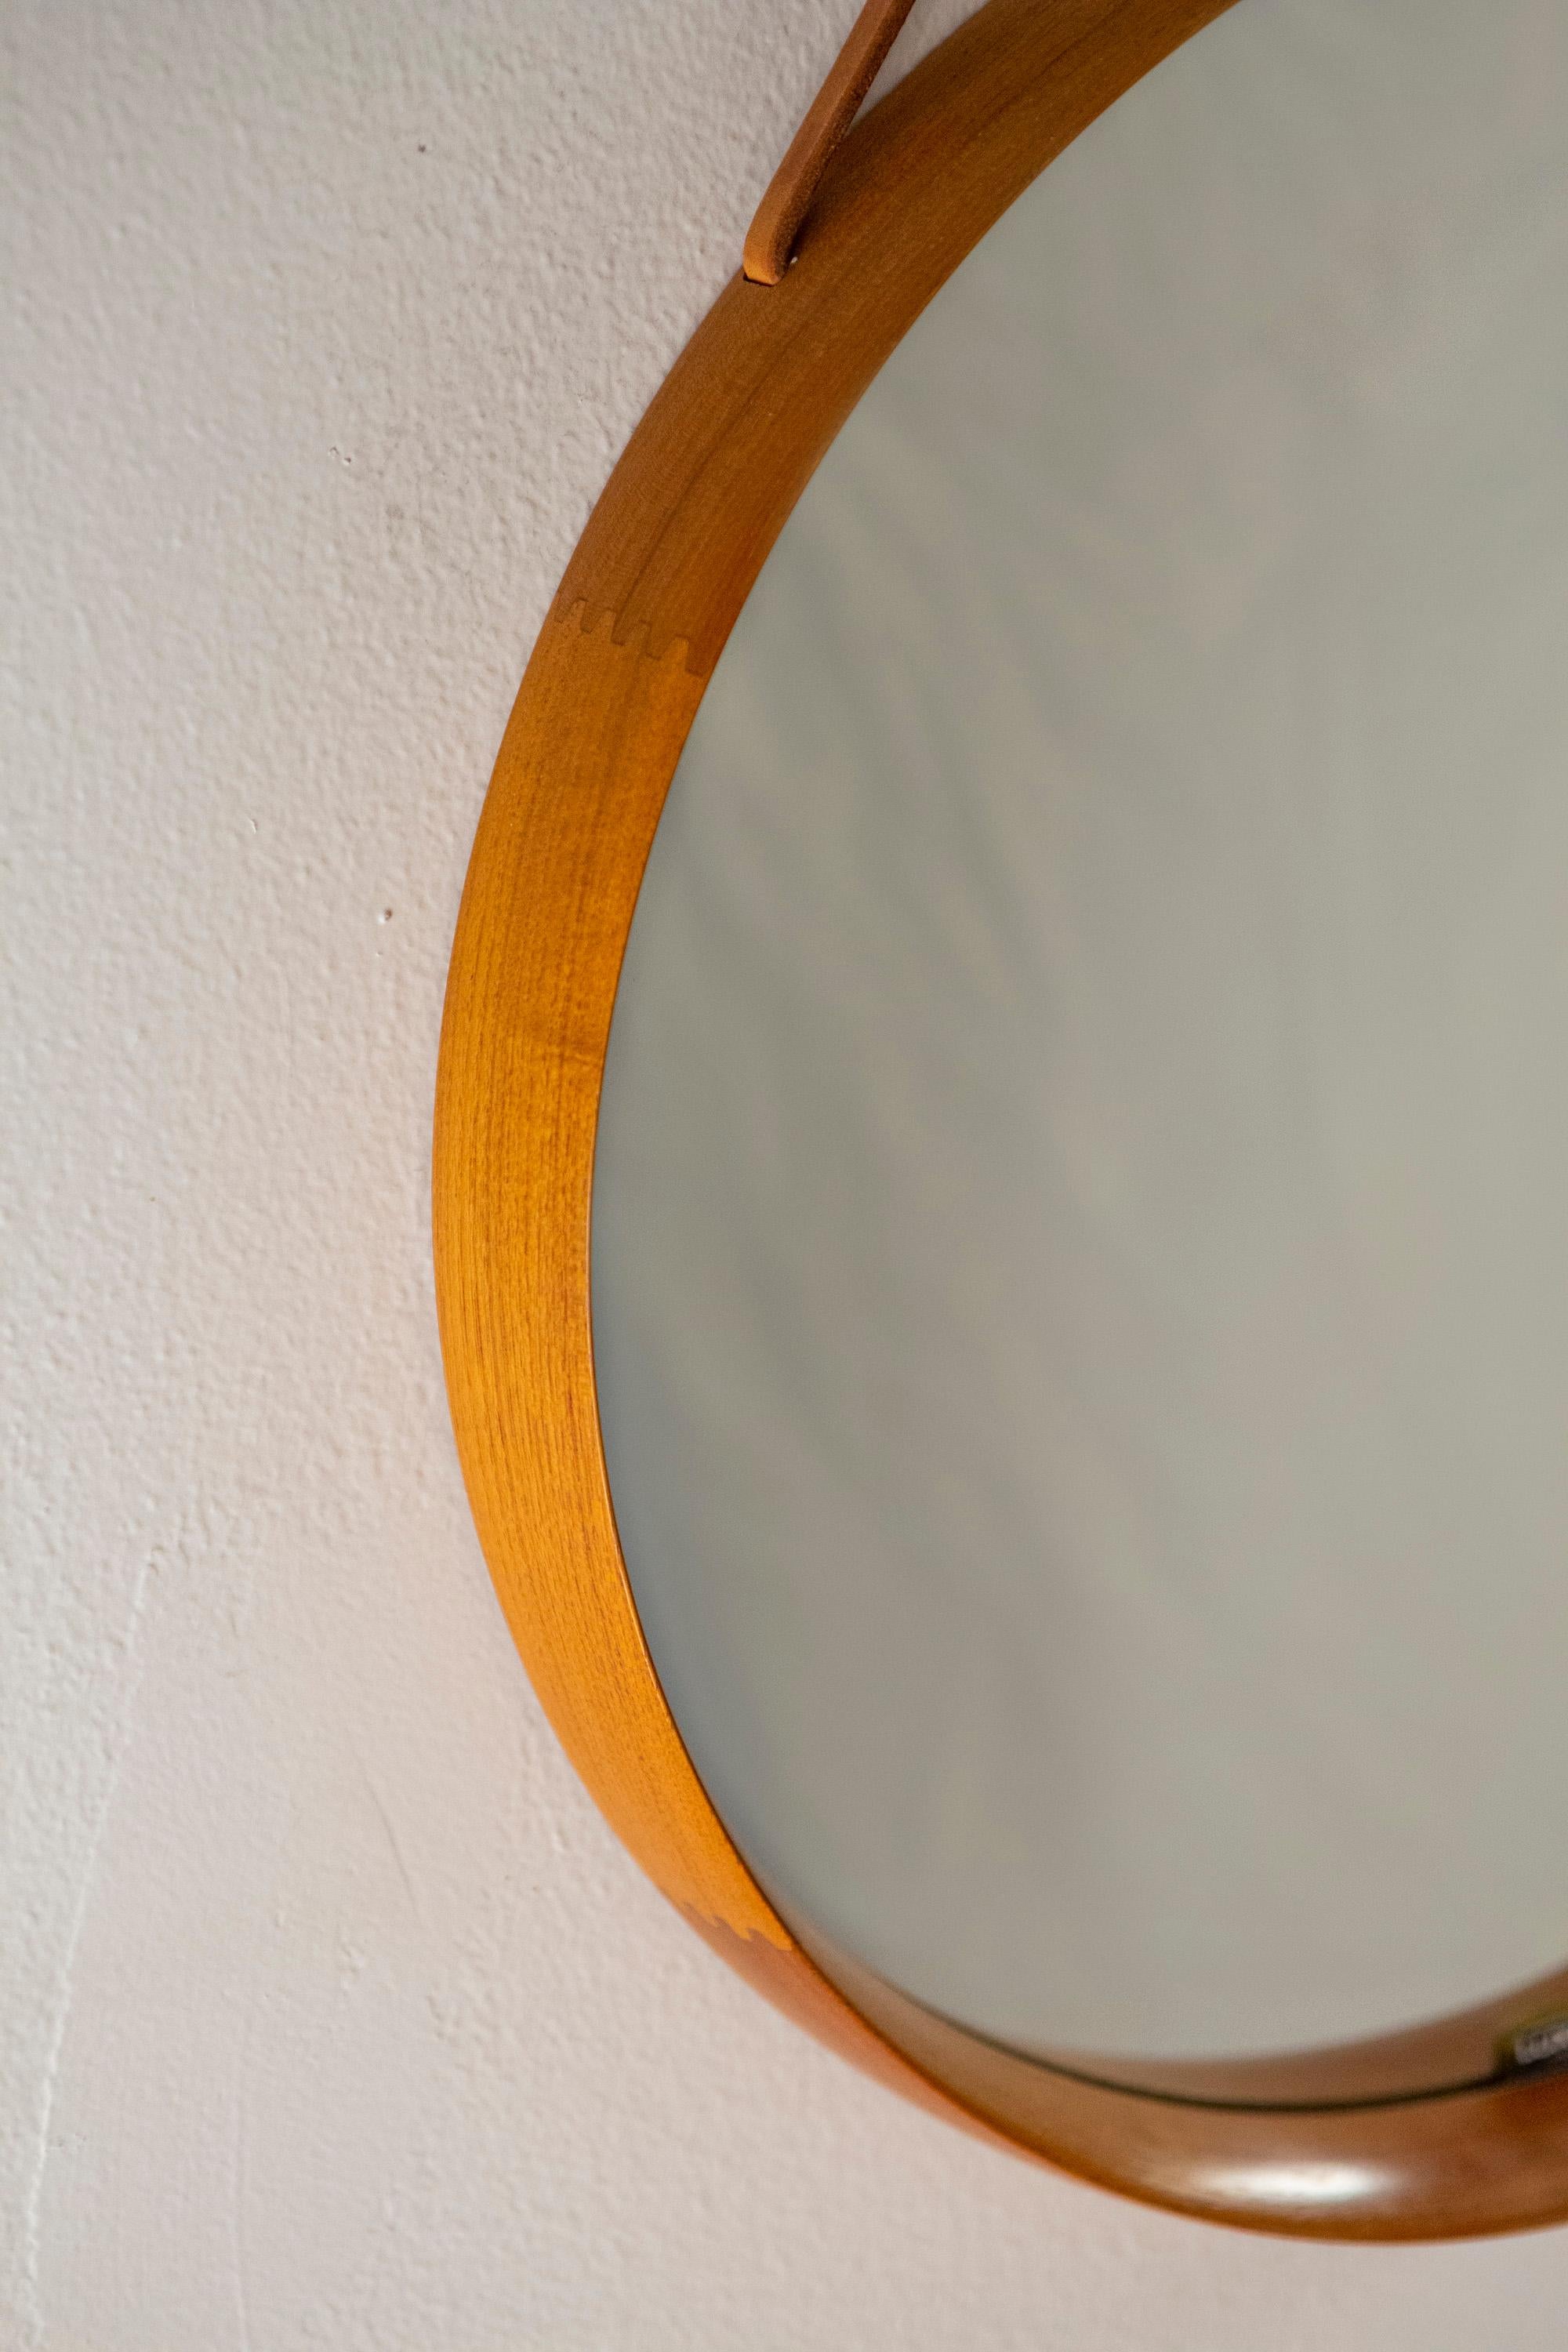 Round Teak Mirror by Uno and Osten Kristiansson for Luxus Vittsjö, Sweden, 1960s For Sale 5